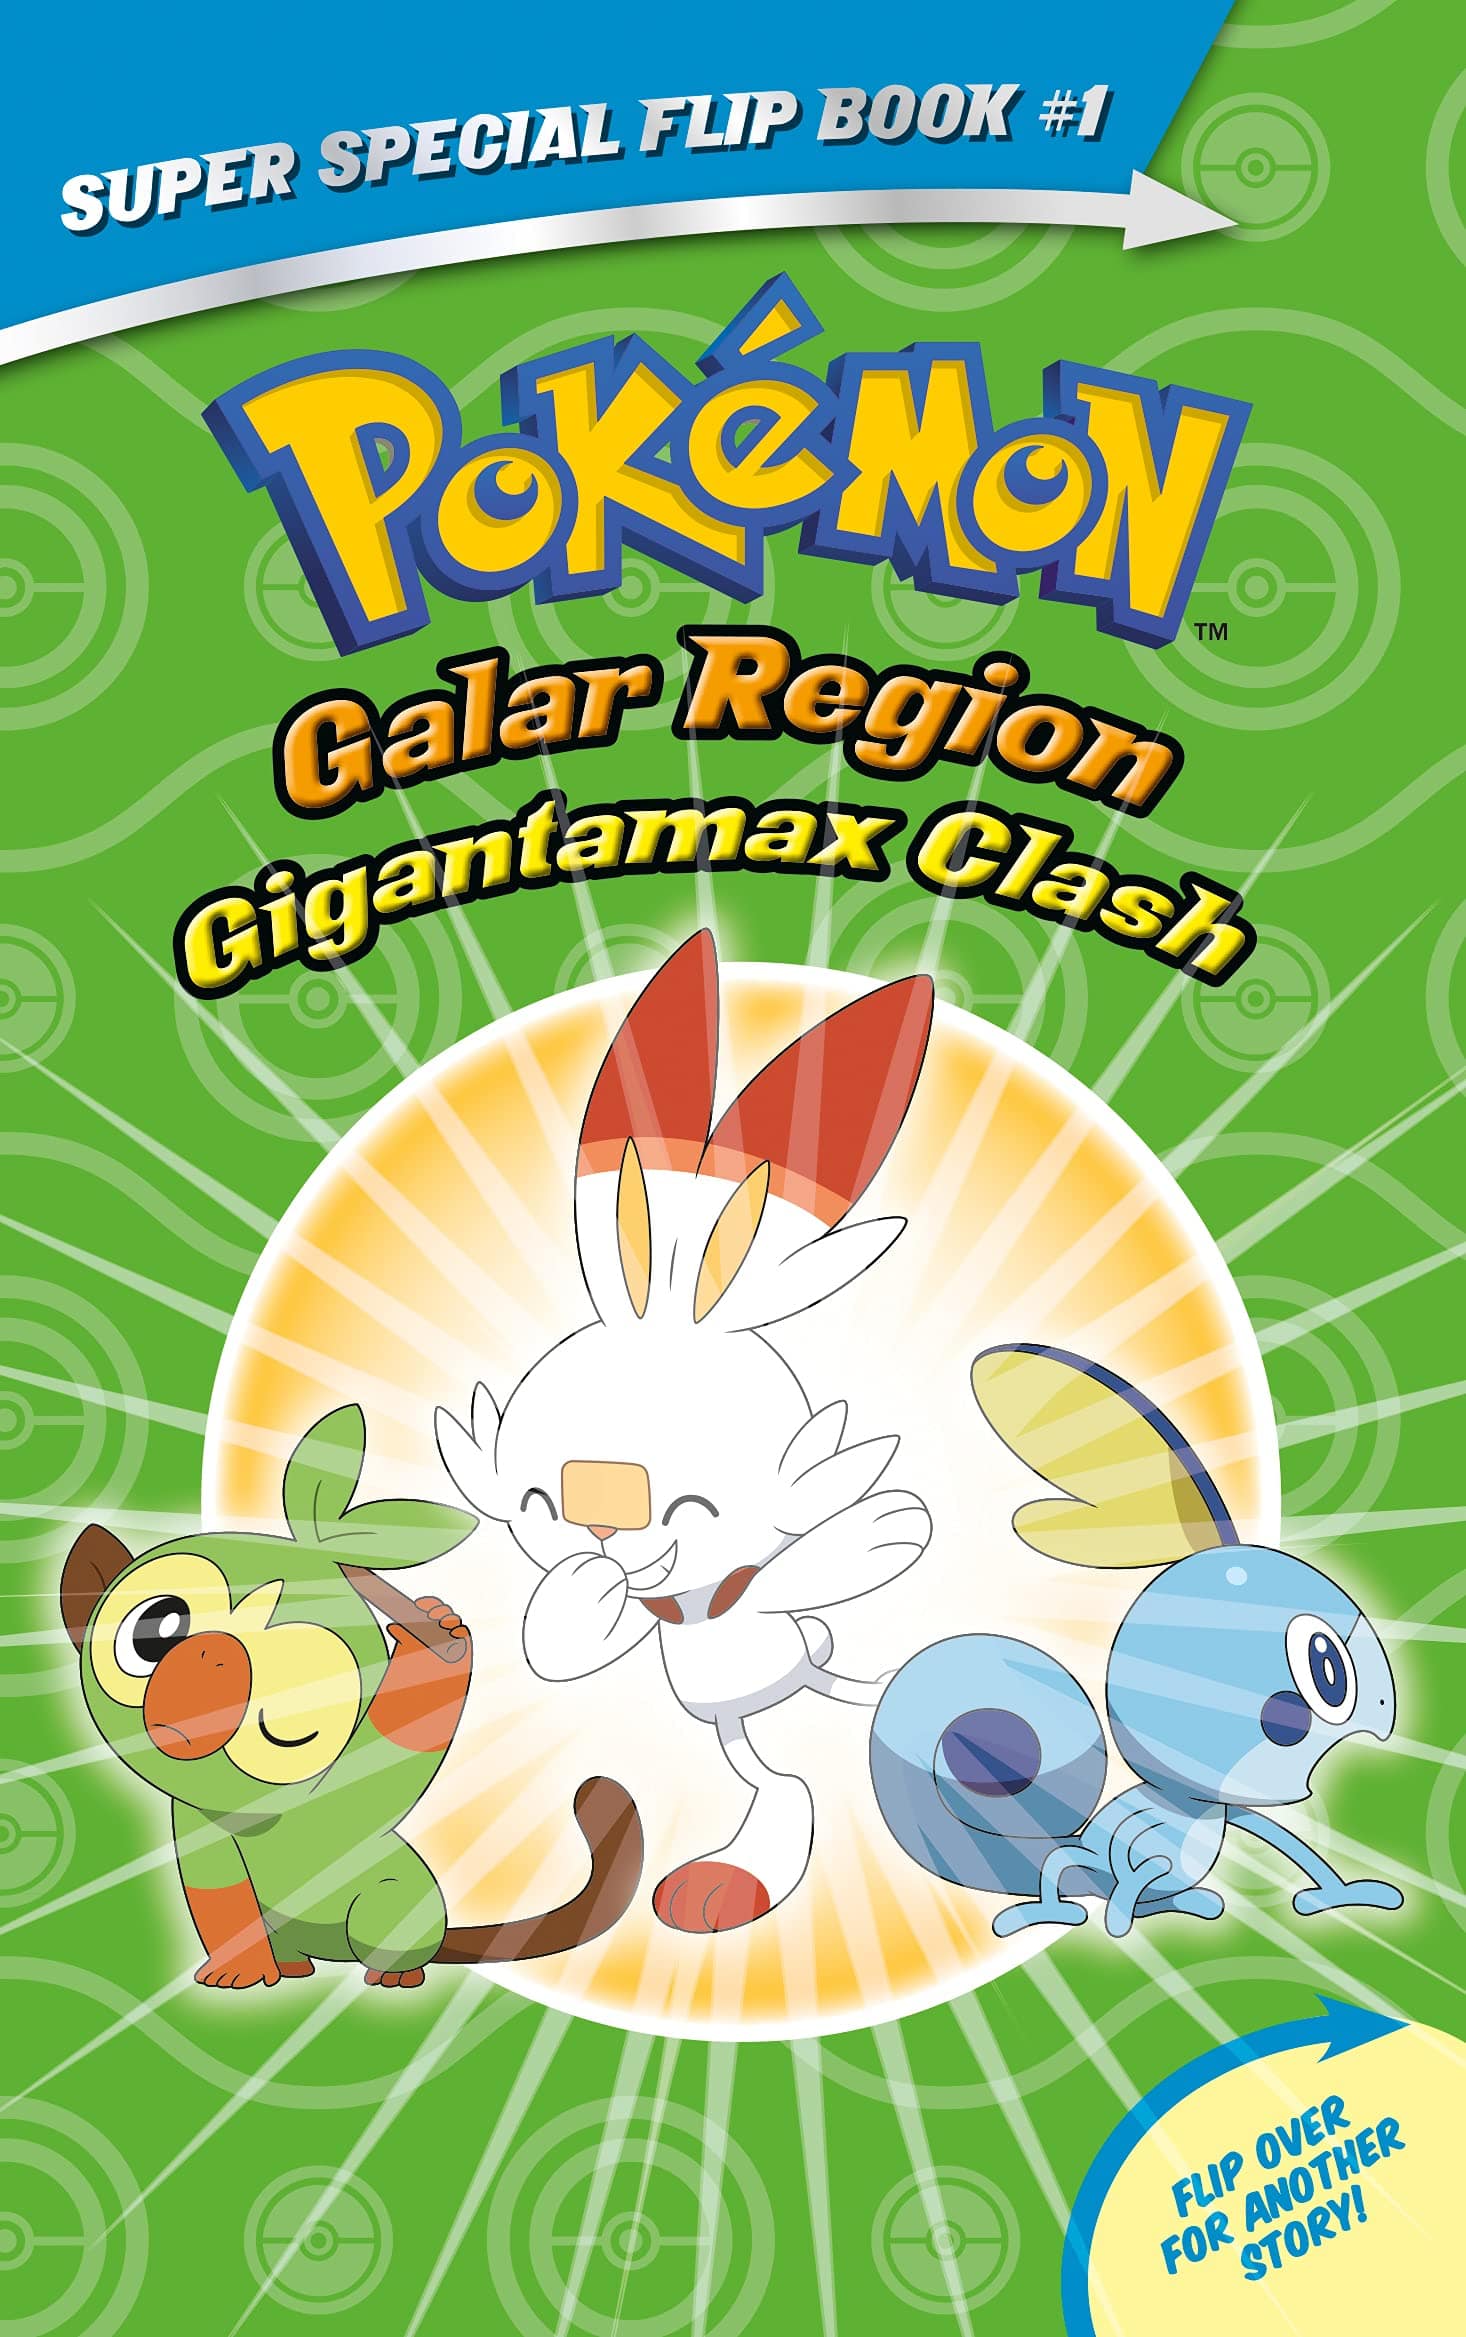 Pokemon: Galar Region - Gigantamax Clash - Third Eye